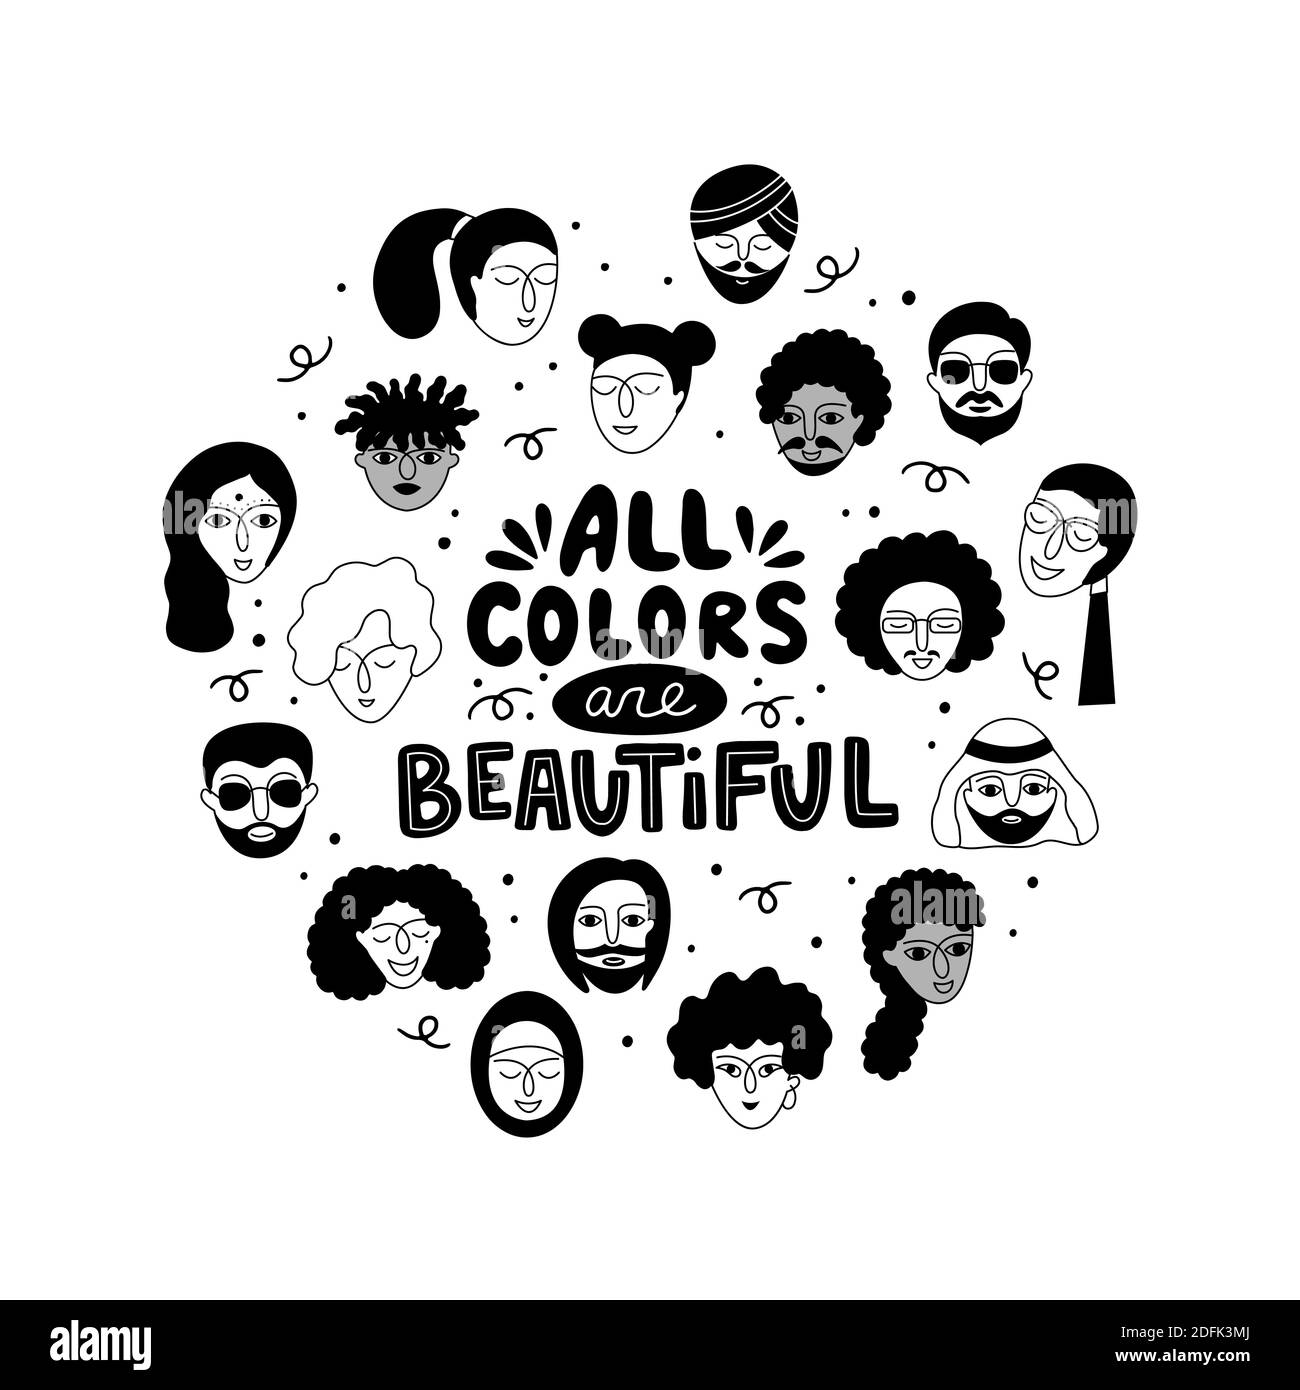 Alle Farben sind schöne Schriftzüge. Multikulturelle Gruppe von Menschen und eine Phrase in einem runden Rahmen. Stock Vektor